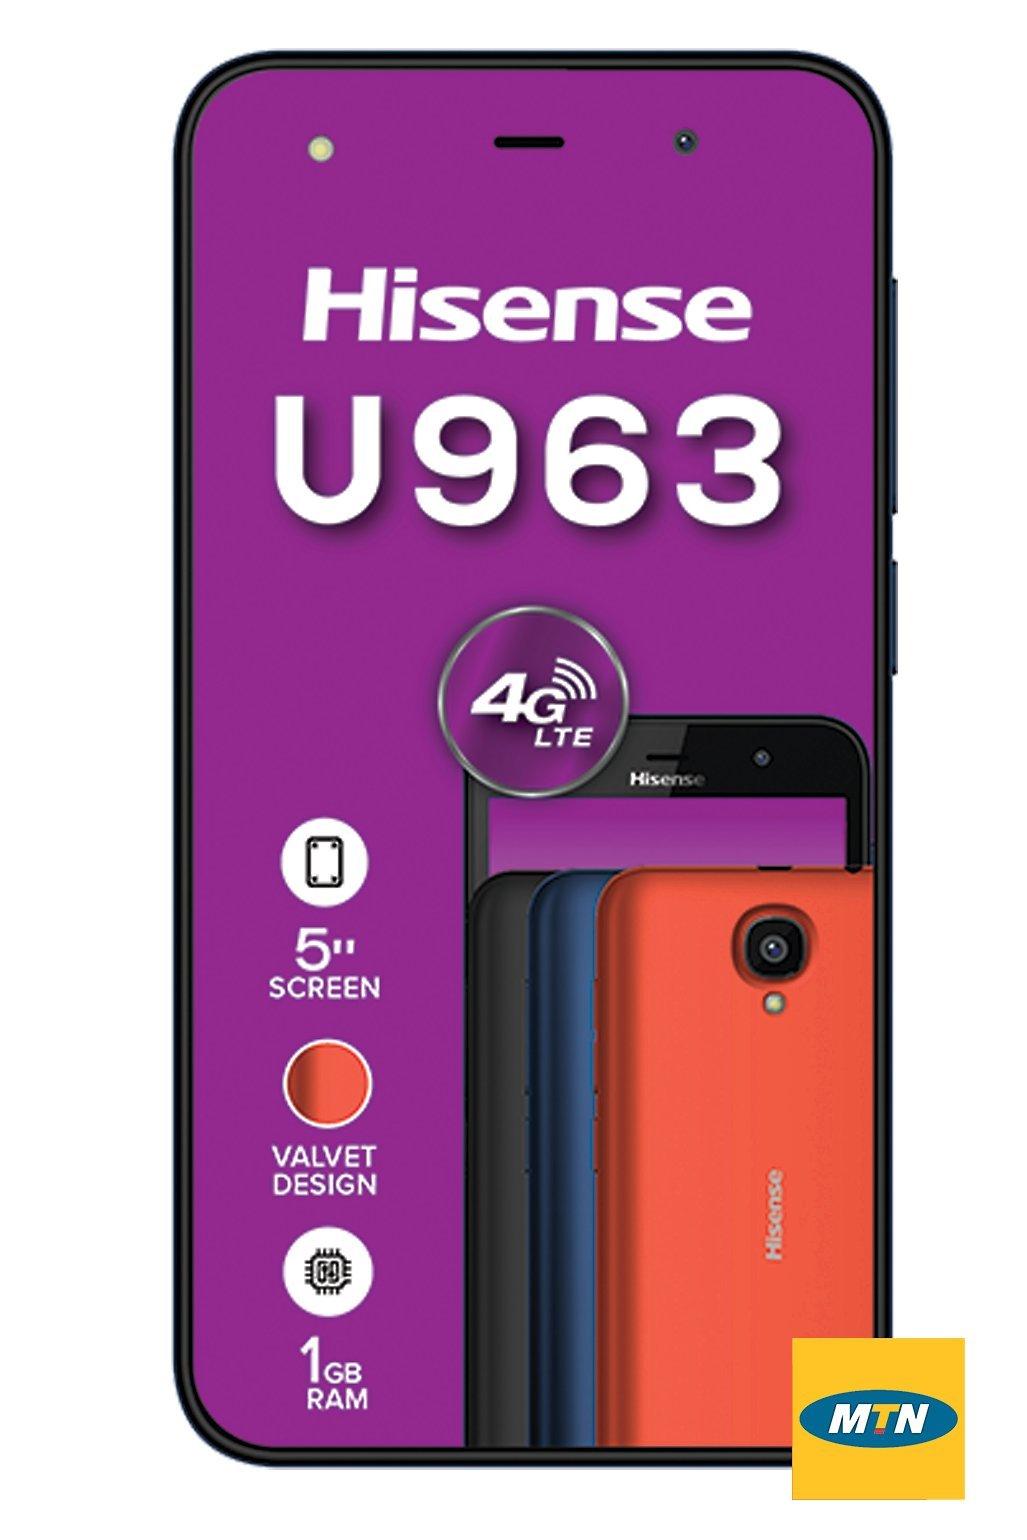 hisense-u963-blue